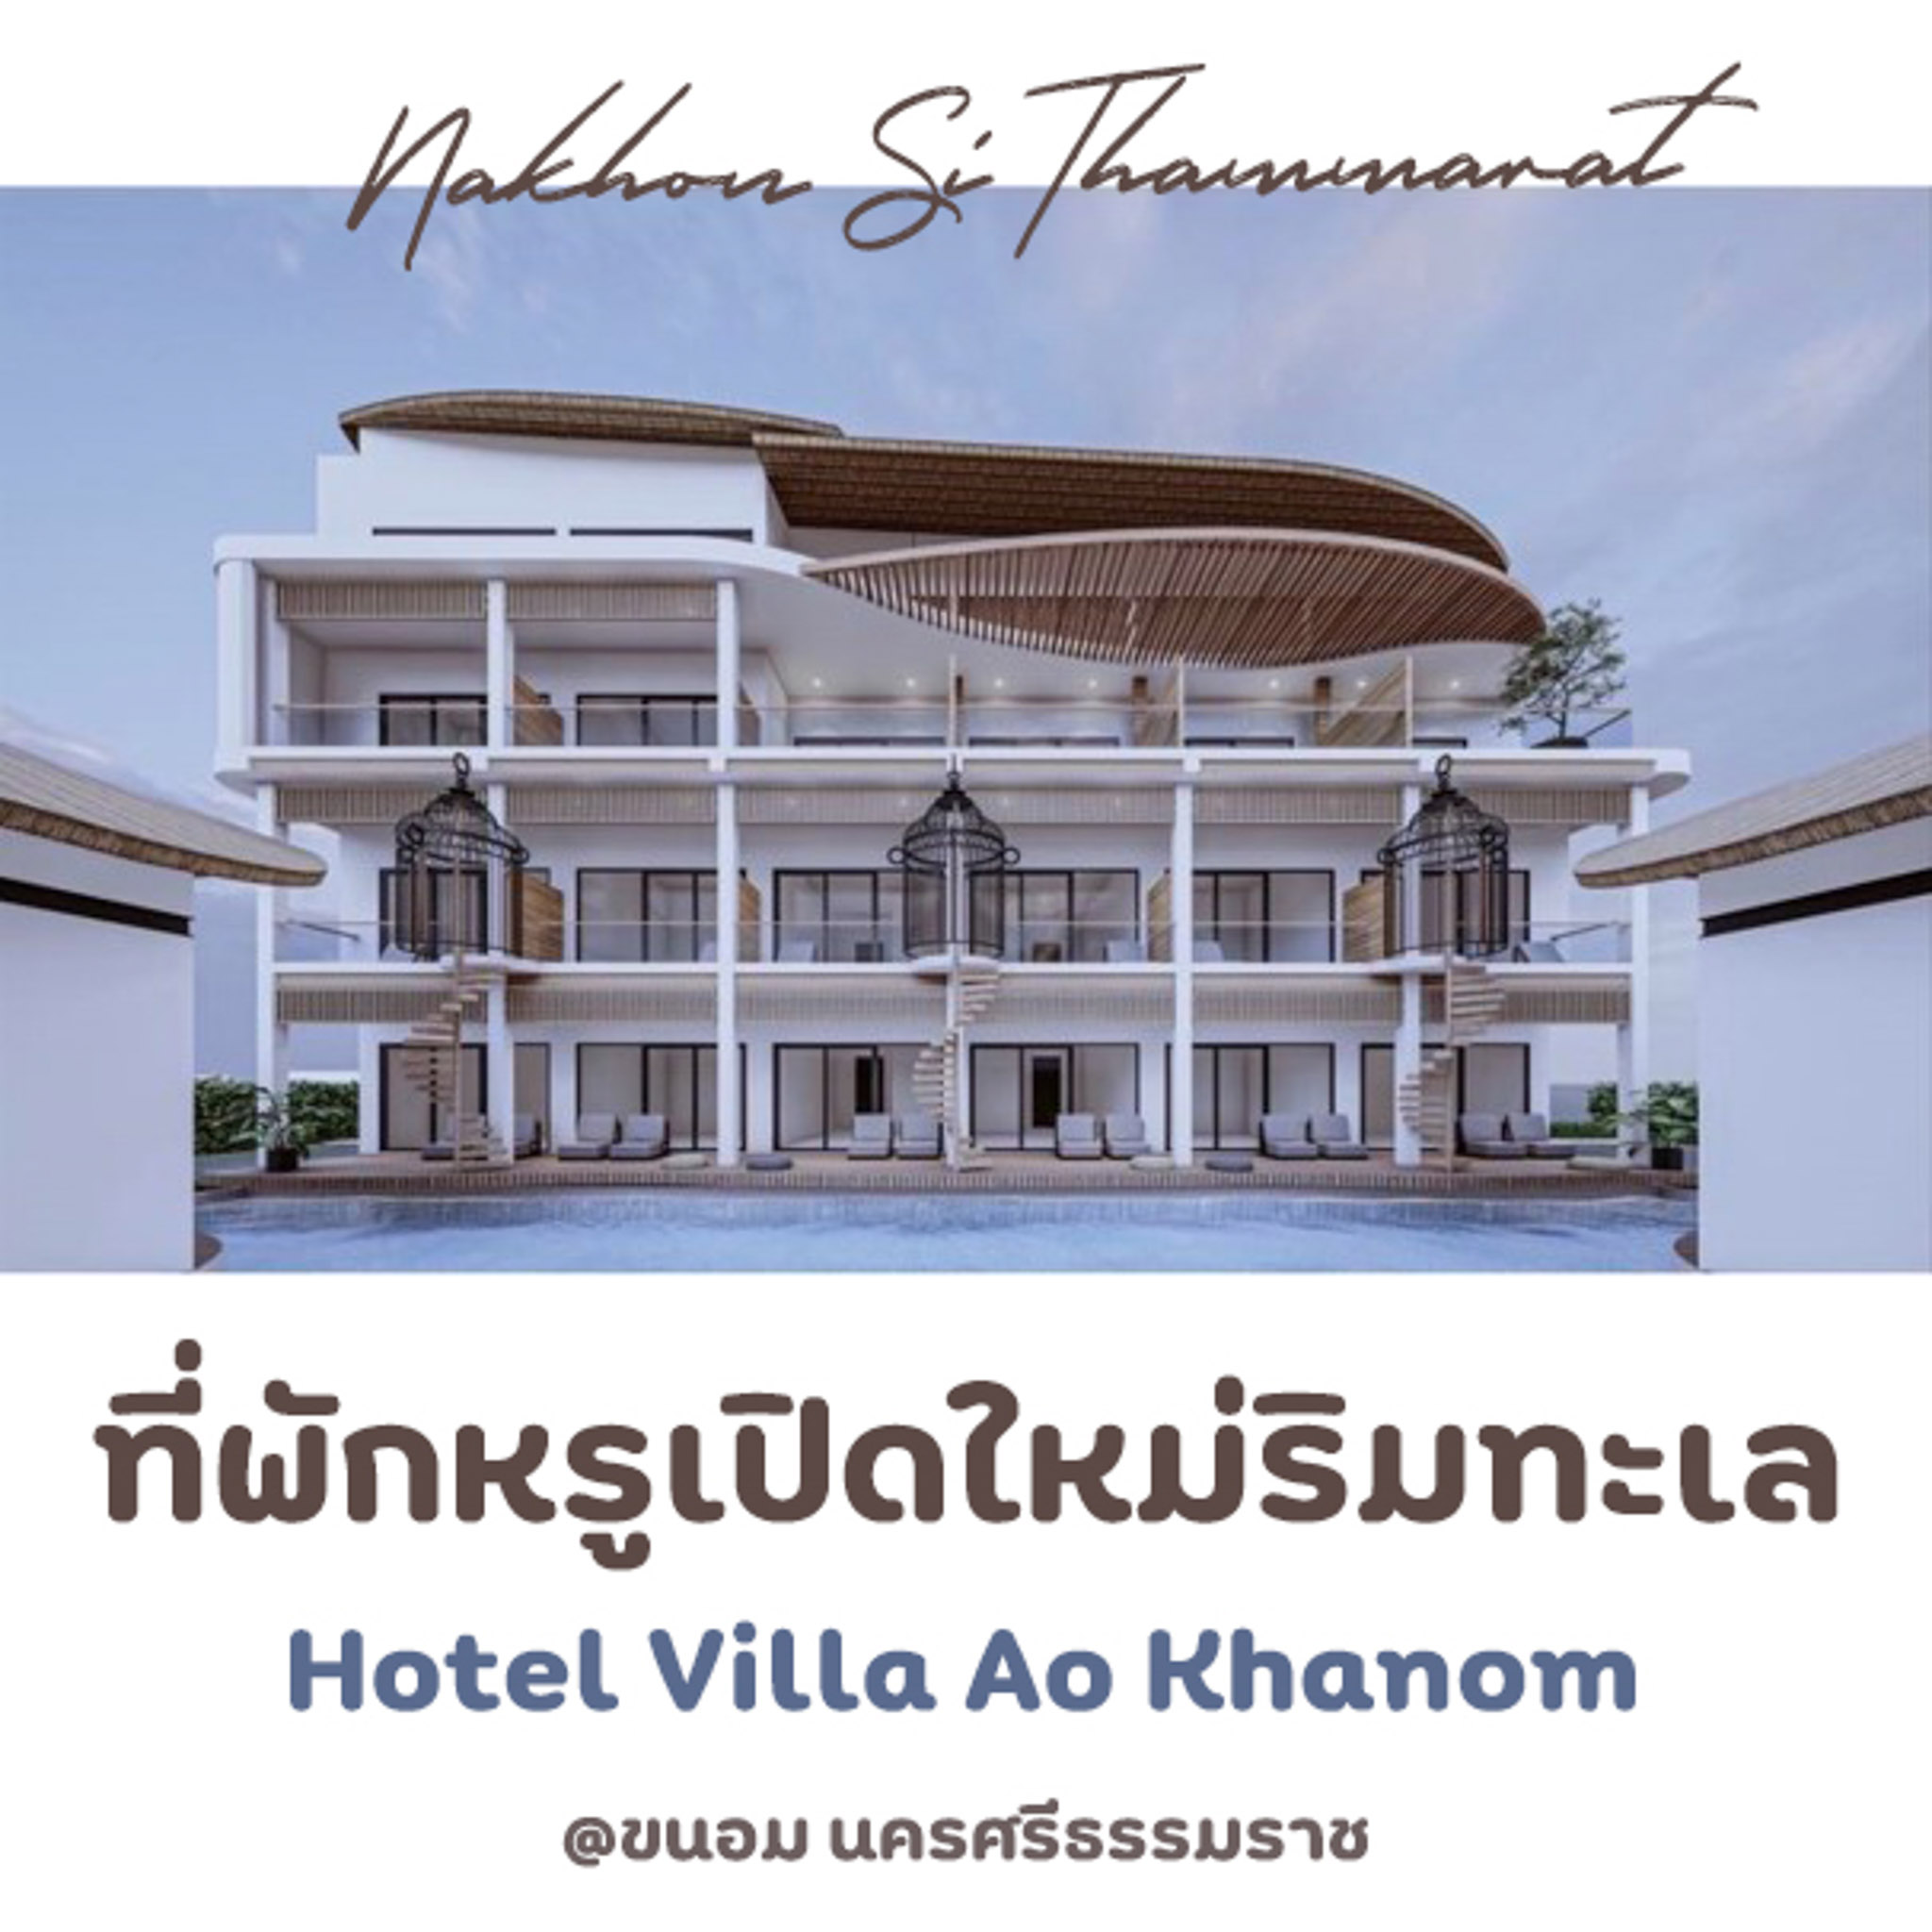 Hotel Villa Ao Khanom ที่พักเปิดใหม่ขนอม วิวทะเลทุกห้อง บอกเลยต้องวิวดีย์ส่วนตัว โรงแรมหรูขนอม